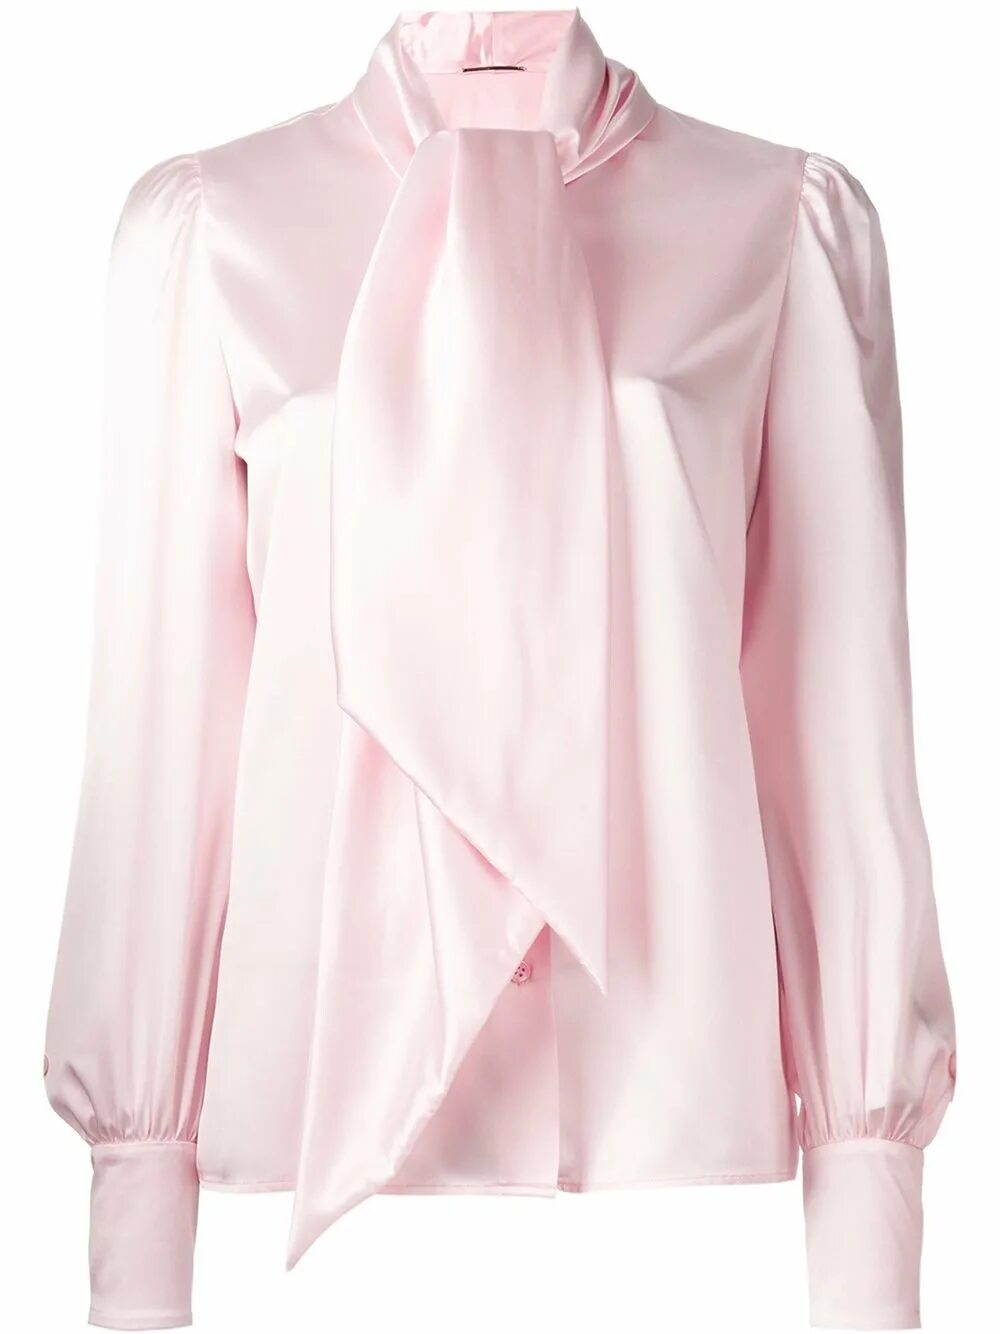 Розовая кофта с бантиками. Блузка Saint Laurent bf65606628y3a838. Шёлковая блузка Ланвин. Сен Лоран блузка. Ив сен Лоран шелковая блуза.